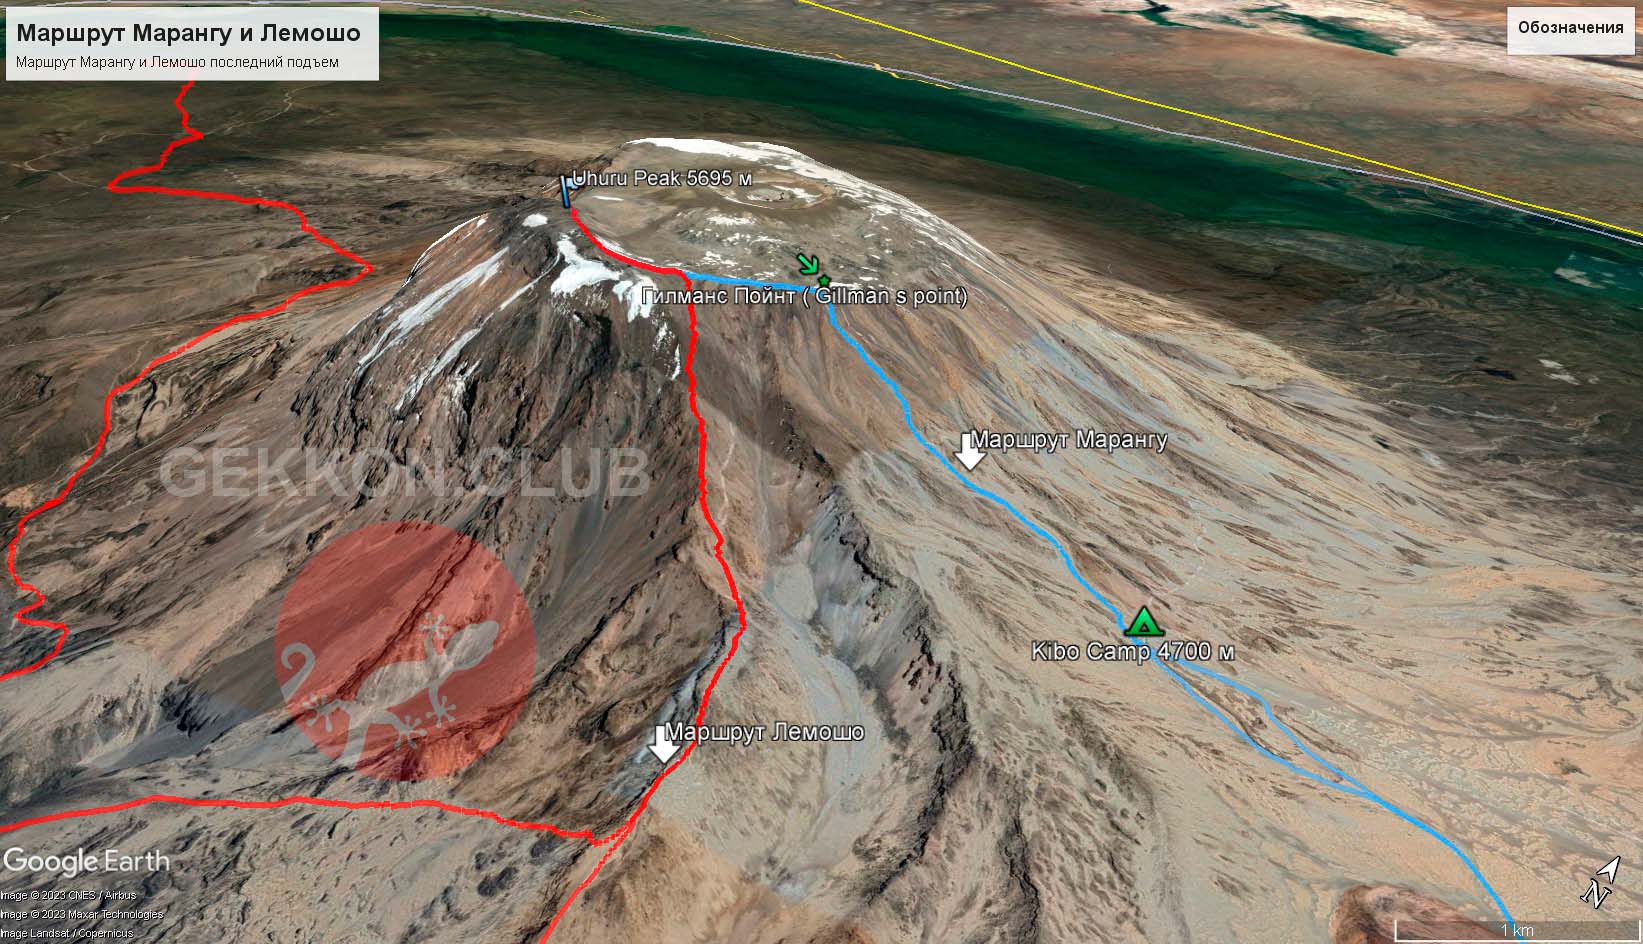 Карта восхождения на вершину Килиманджаро на основе gps трека